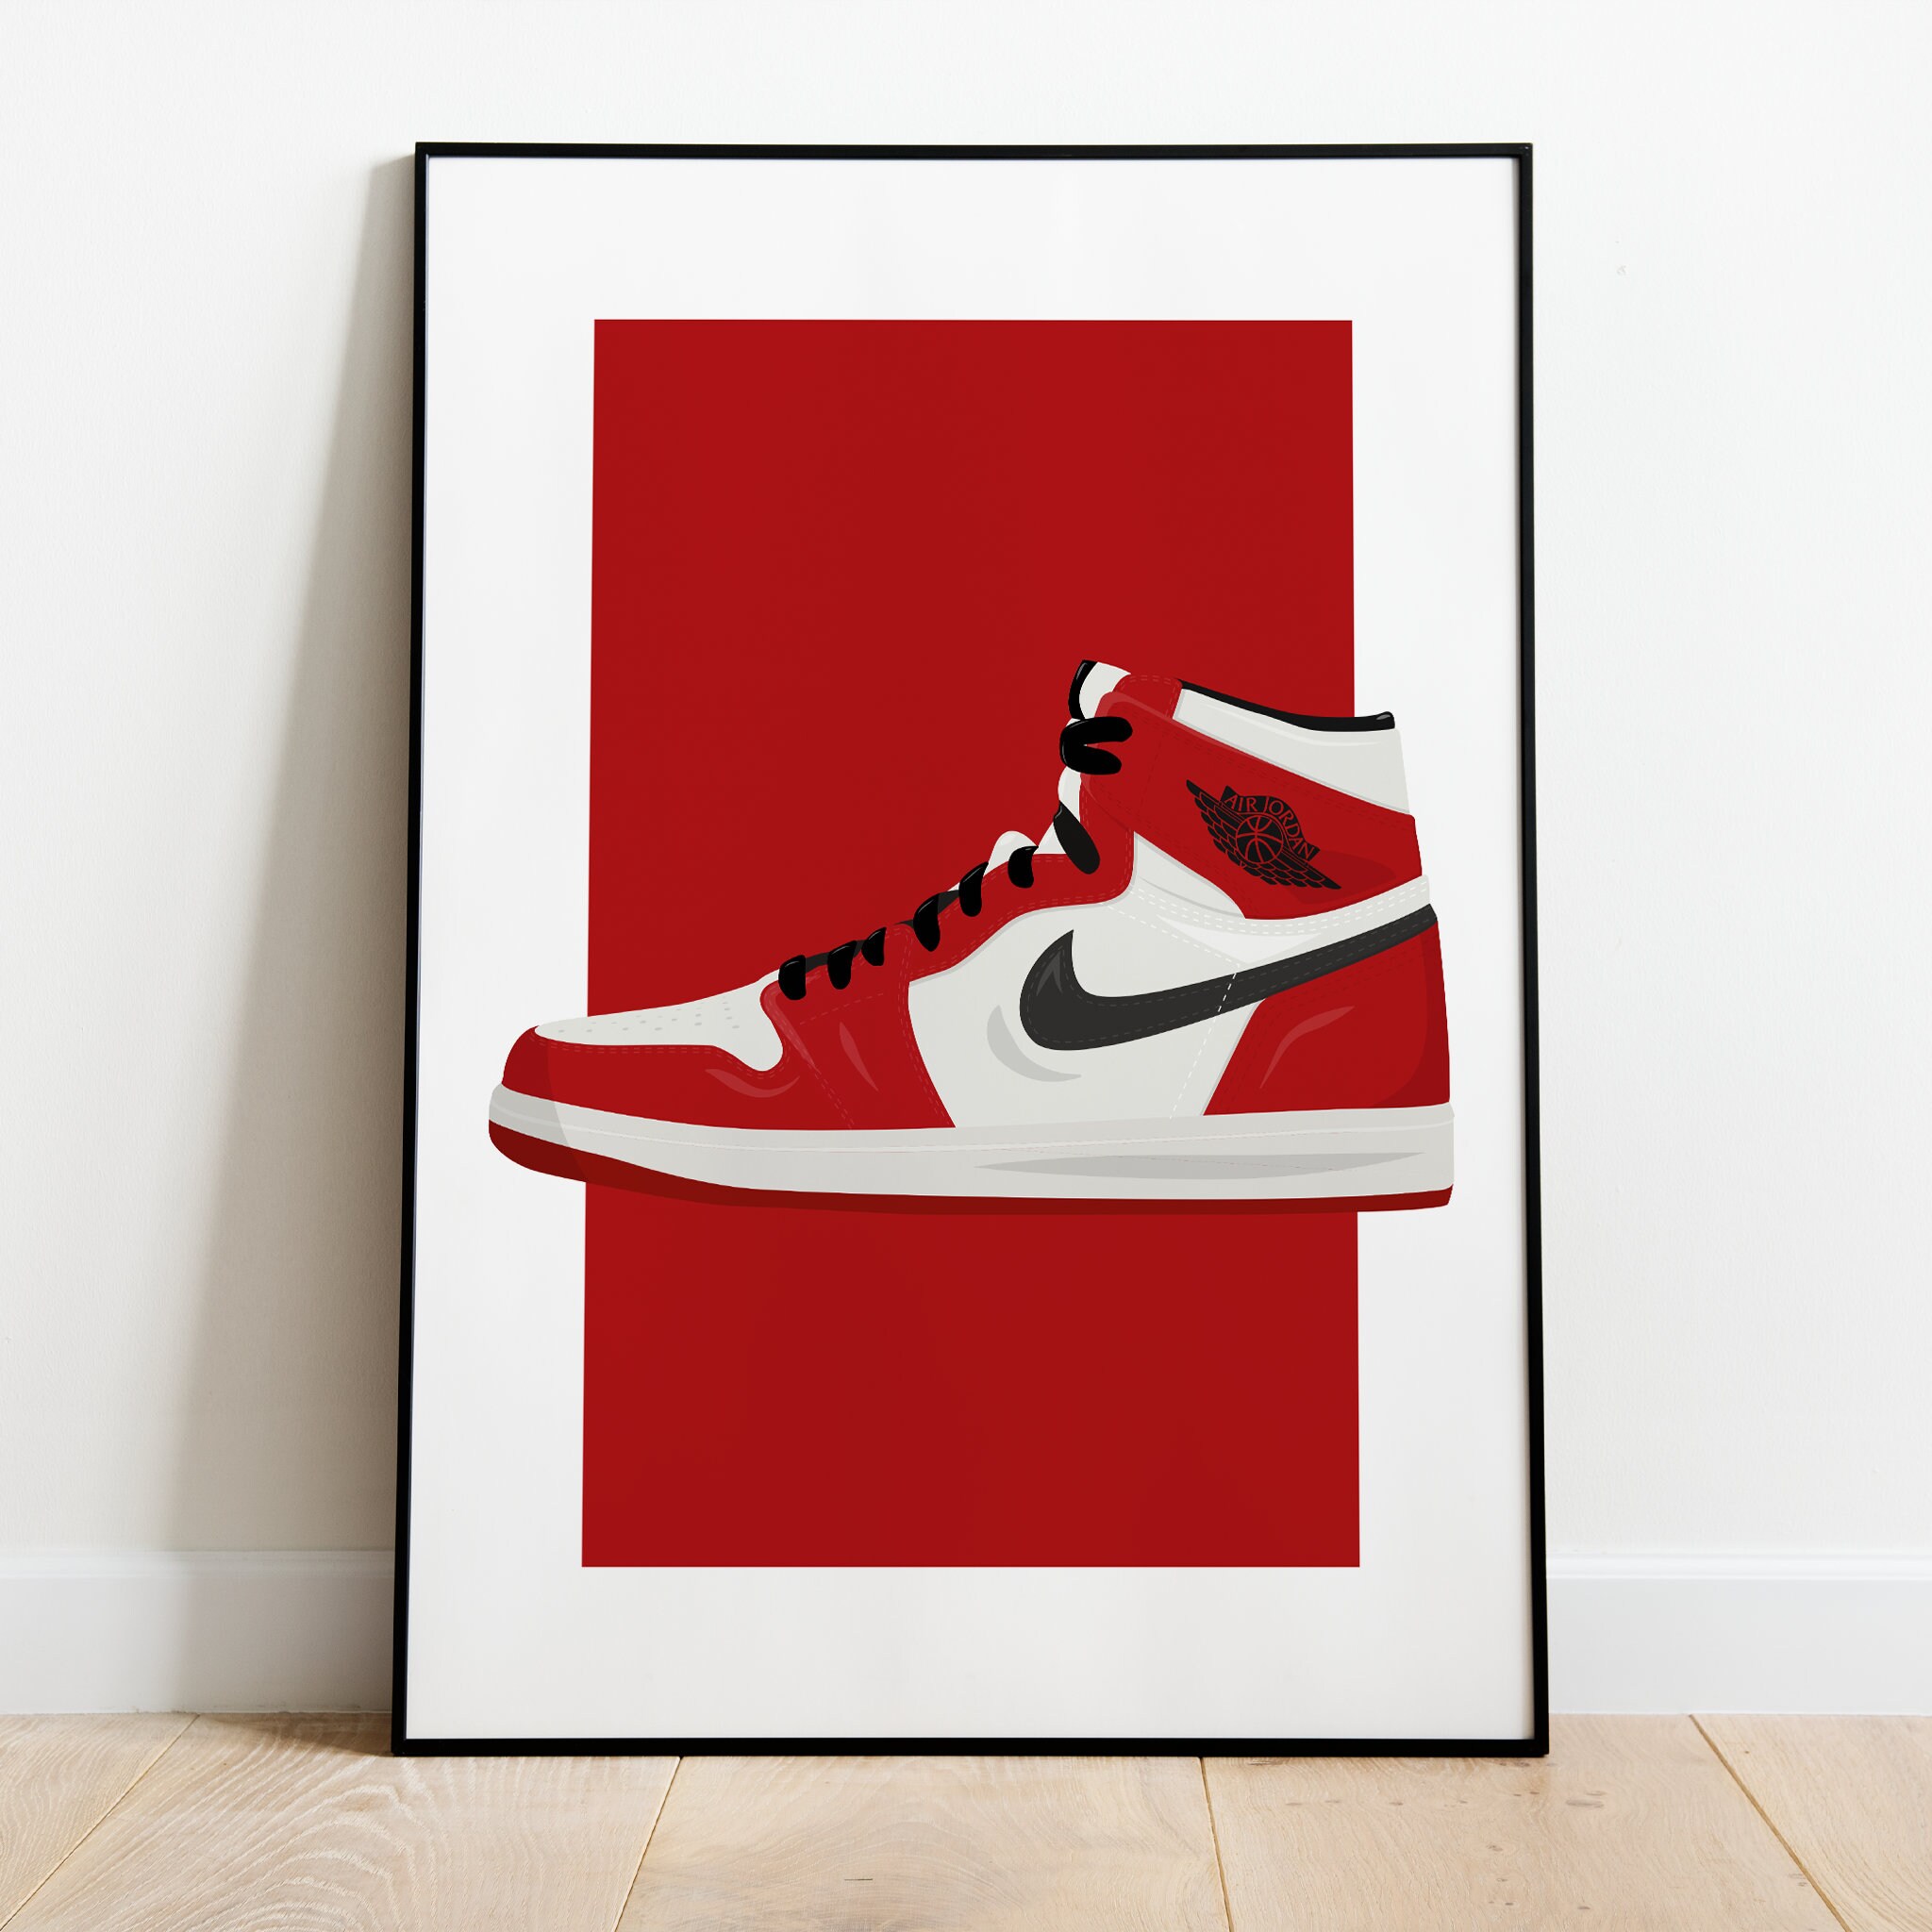 Molesto Luna Alta exposición Nike Jordan Air 1 Chicago Poster - Etsy